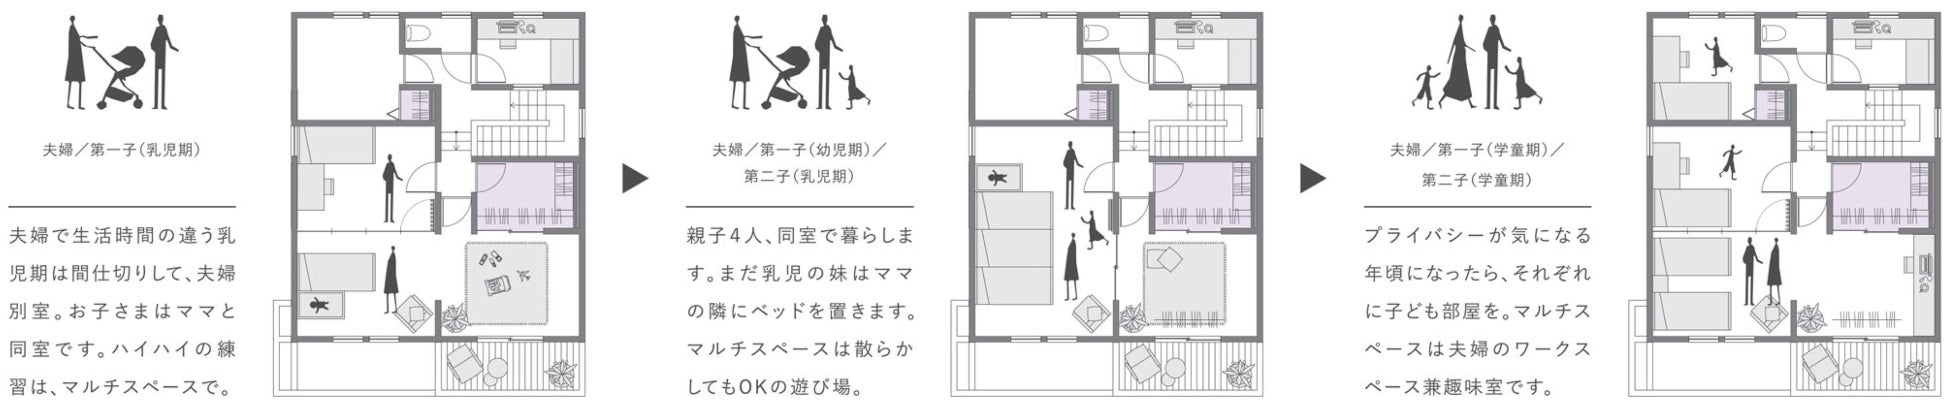 プロの「おすすめ」を満載した、新時代の企画住宅「SMART STYLE Roomie」を新発売のサブ画像5